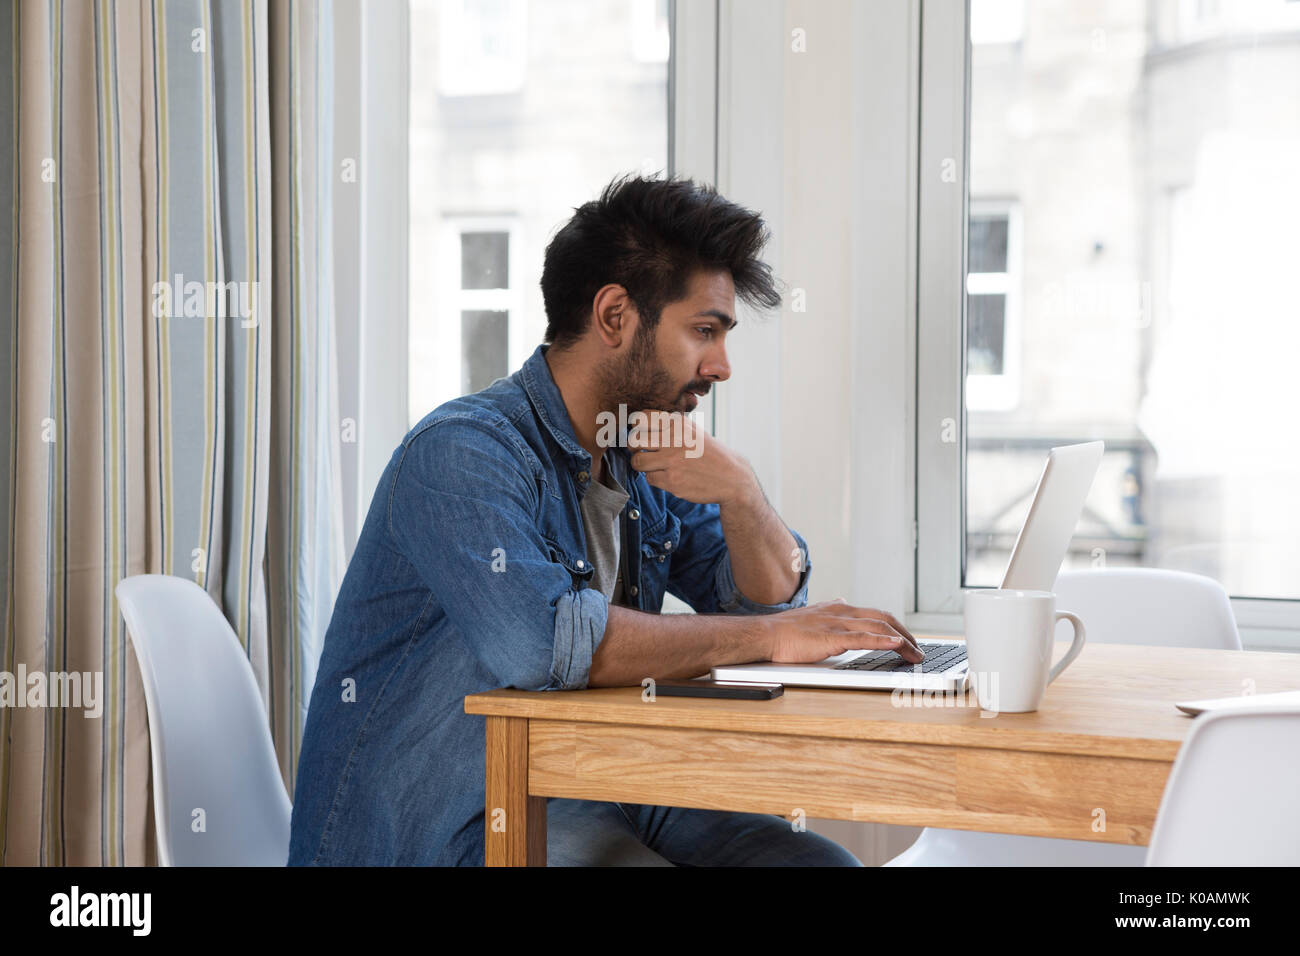 Retrato de un hombre de origen indio sentado a la mesa en casa trabajando en un ordenador portátil. Vista lateral. Foto de stock